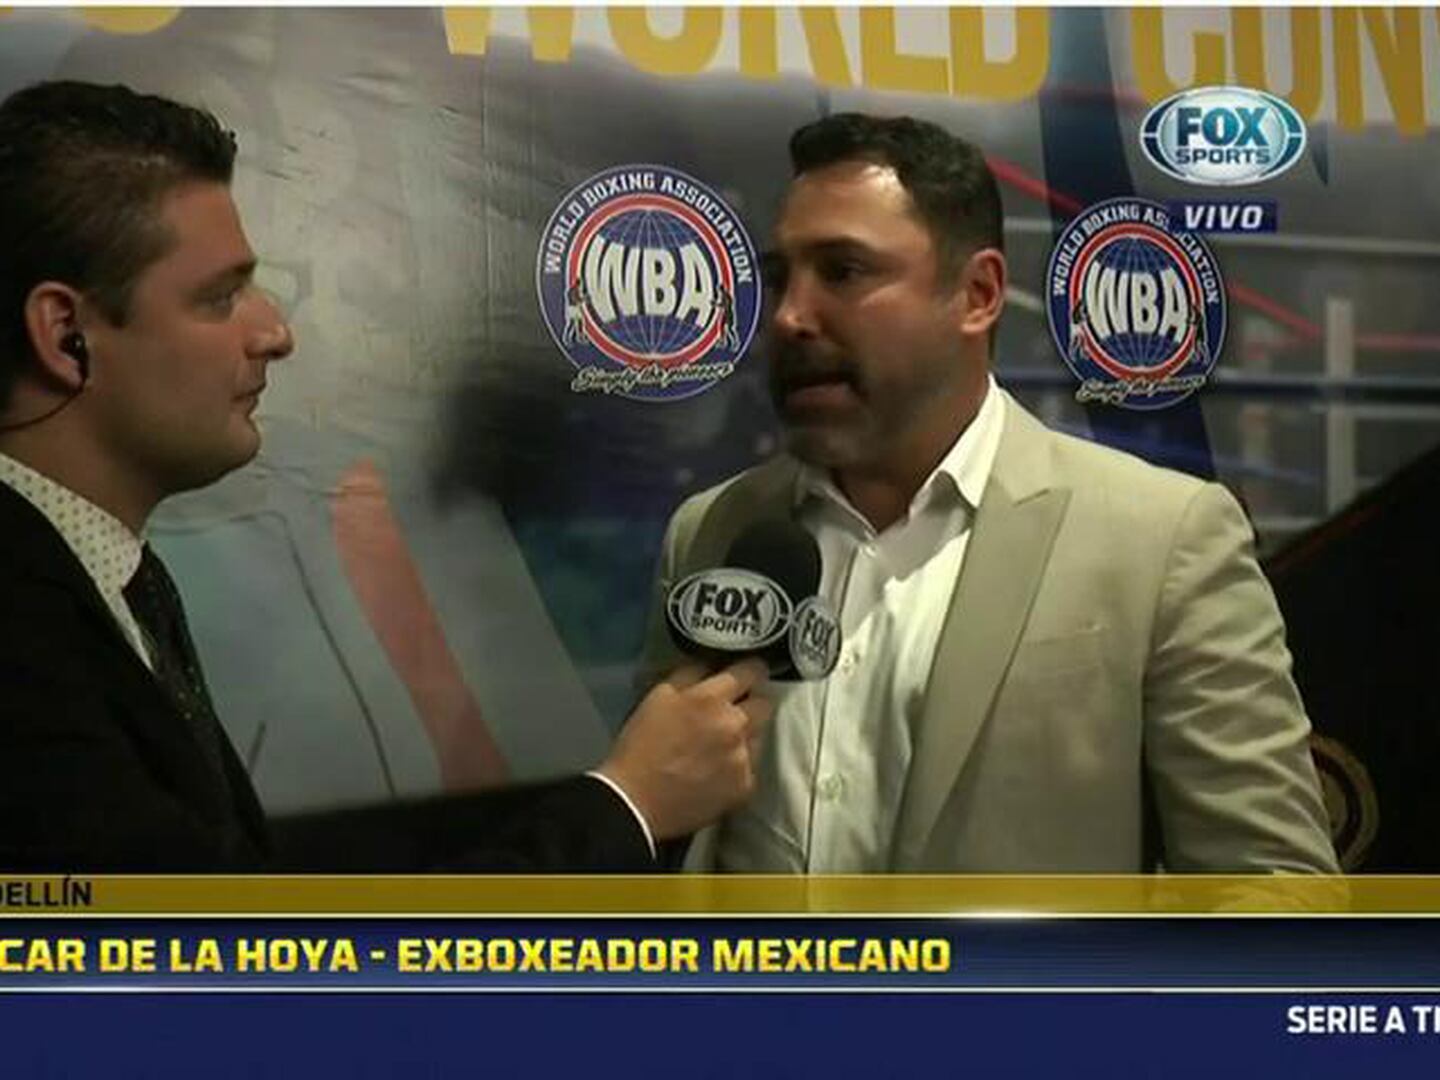 Óscar de la Hoya: “La AMB ha sido una bendición para mucha gente”